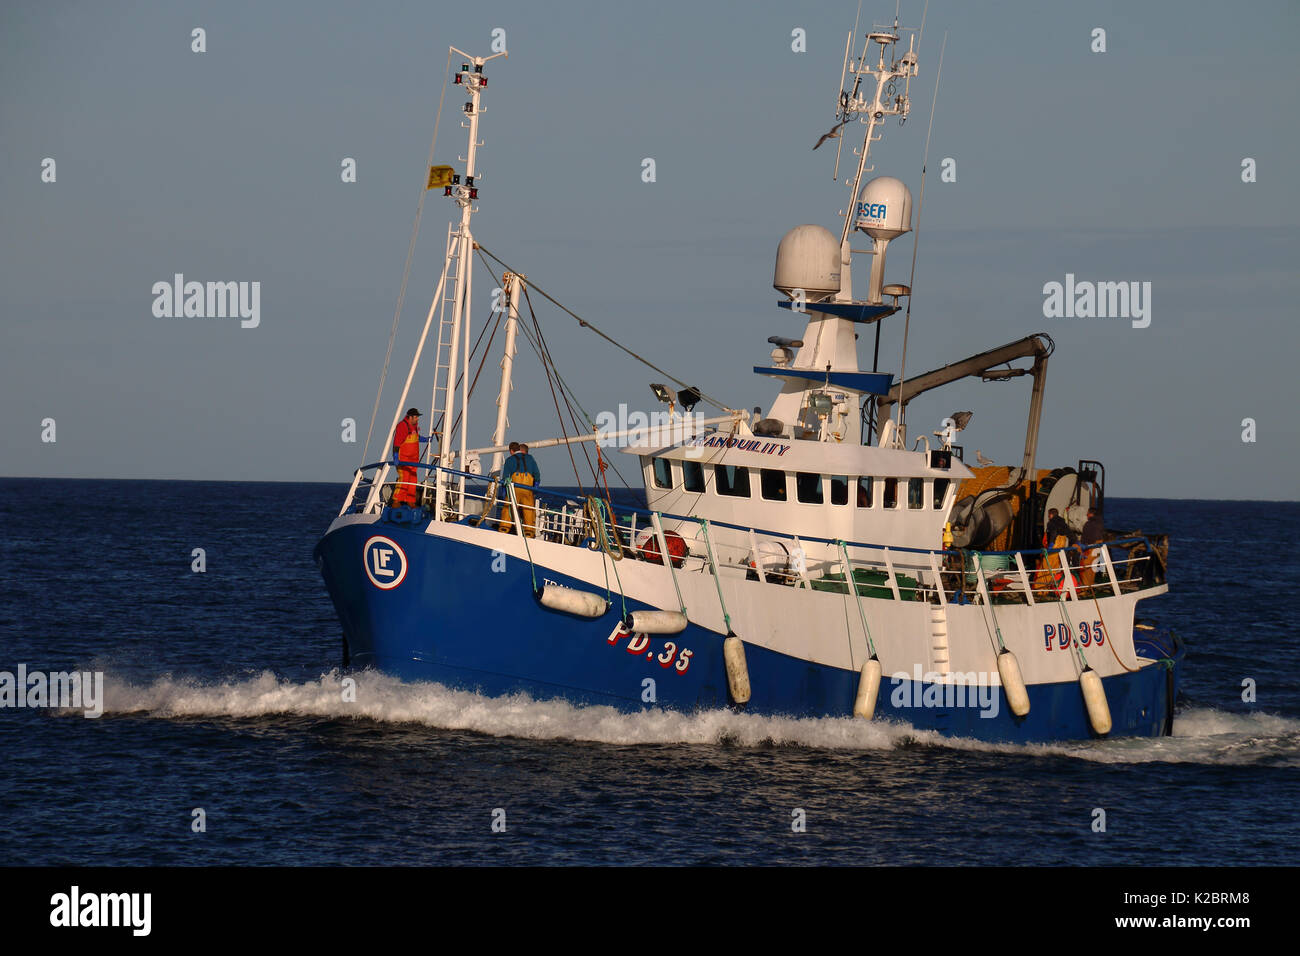 Buque de pesca "tranquilidad", Mar del Norte, en septiembre de 2014. Todas no editorial usos deben borrarse individualmente. Foto de stock